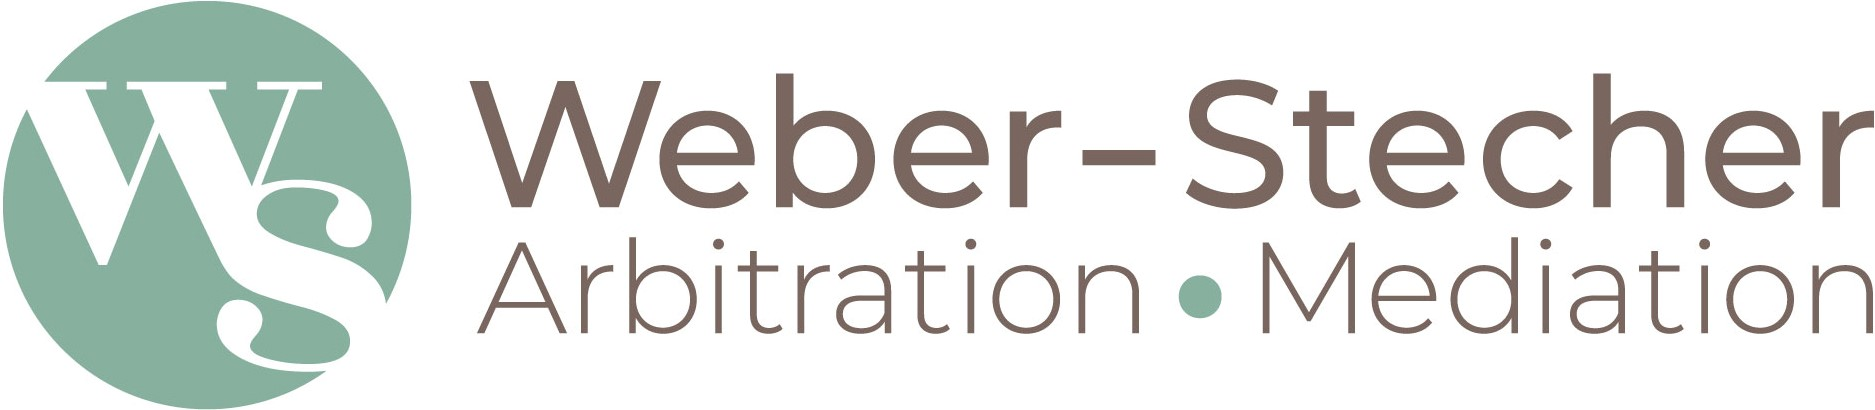 Member: Weber-Stecher Arbitration